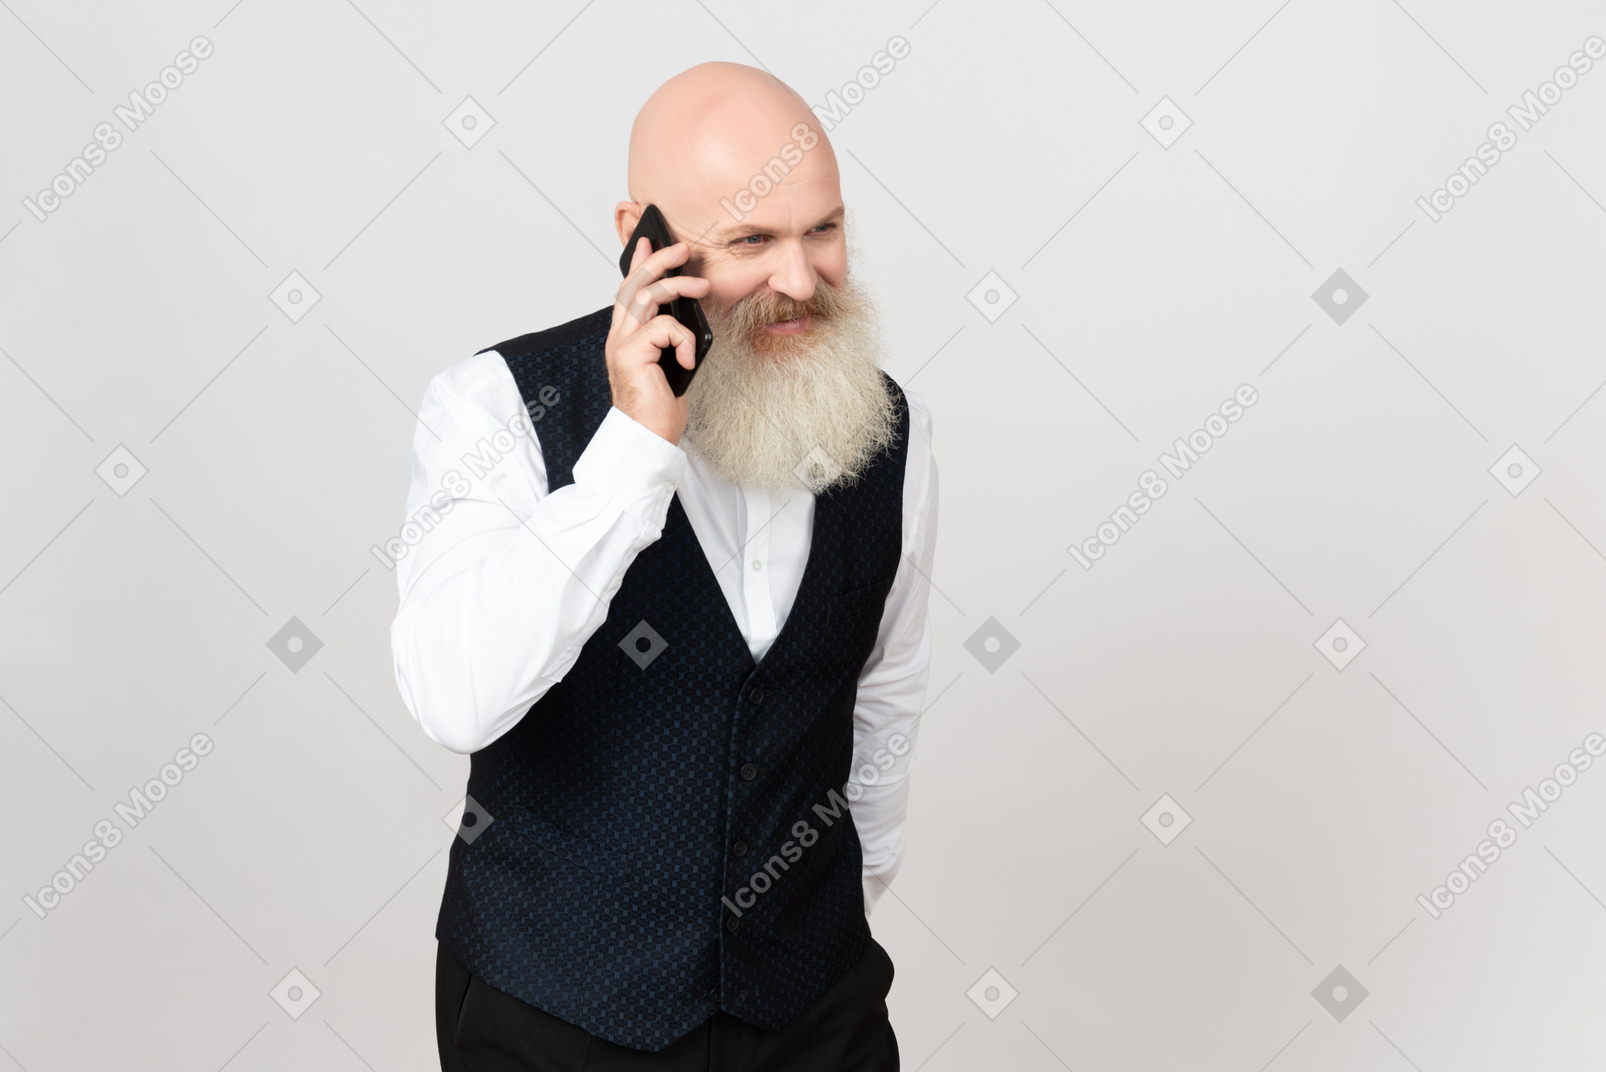 Alter mann lächelnd und am telefon sprechen